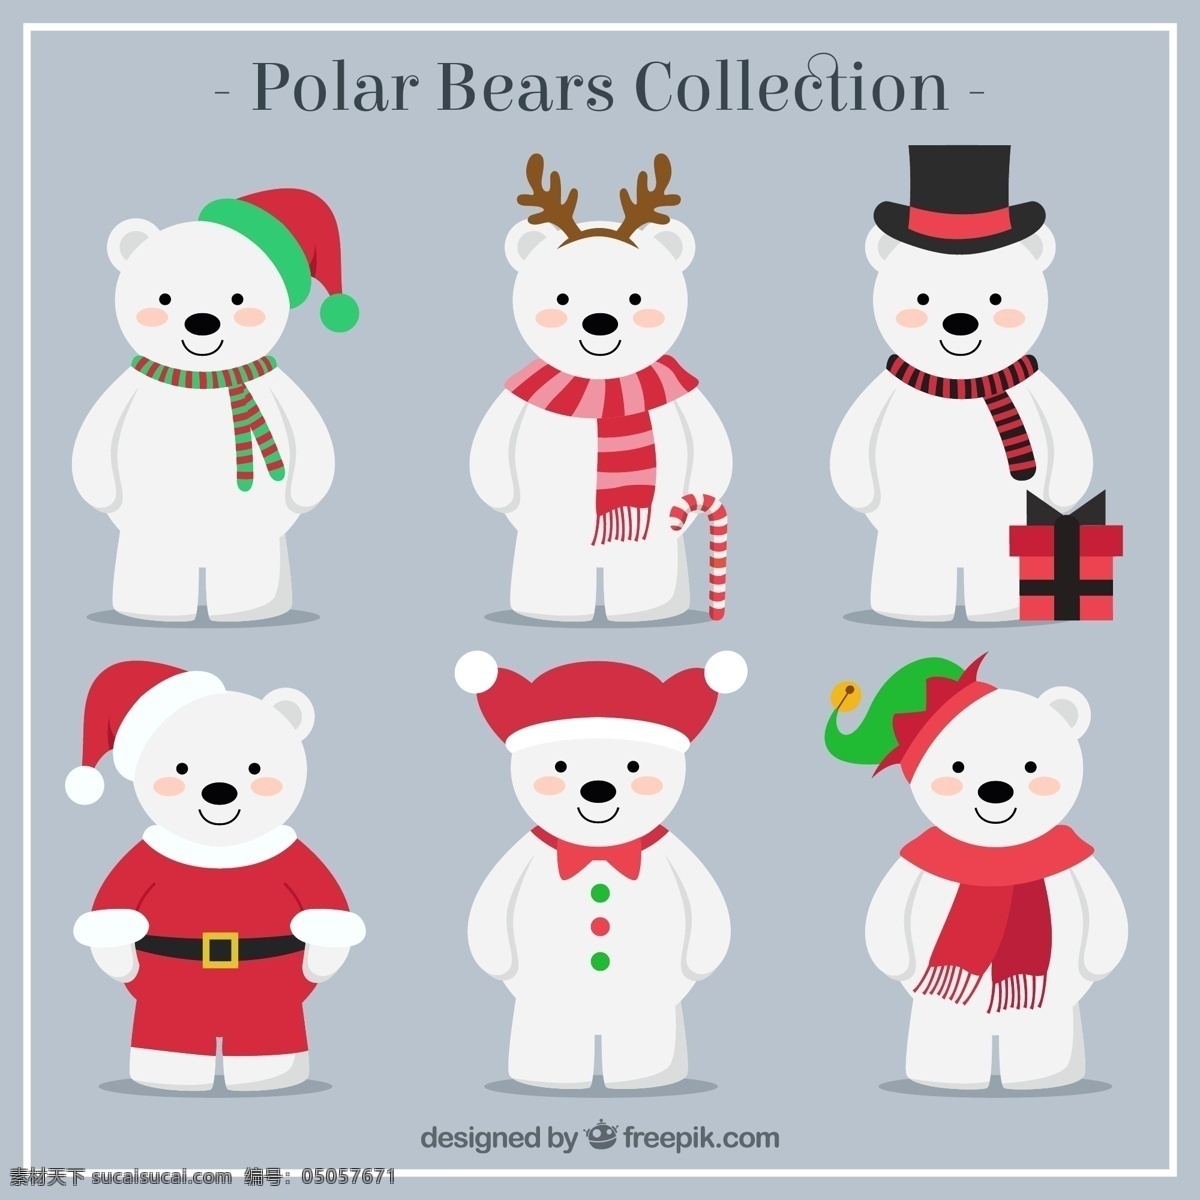 可爱 北极熊 矢量 圣诞帽 礼盒 礼帽 圣诞节 拐棍糖 节日 动物 矢量图